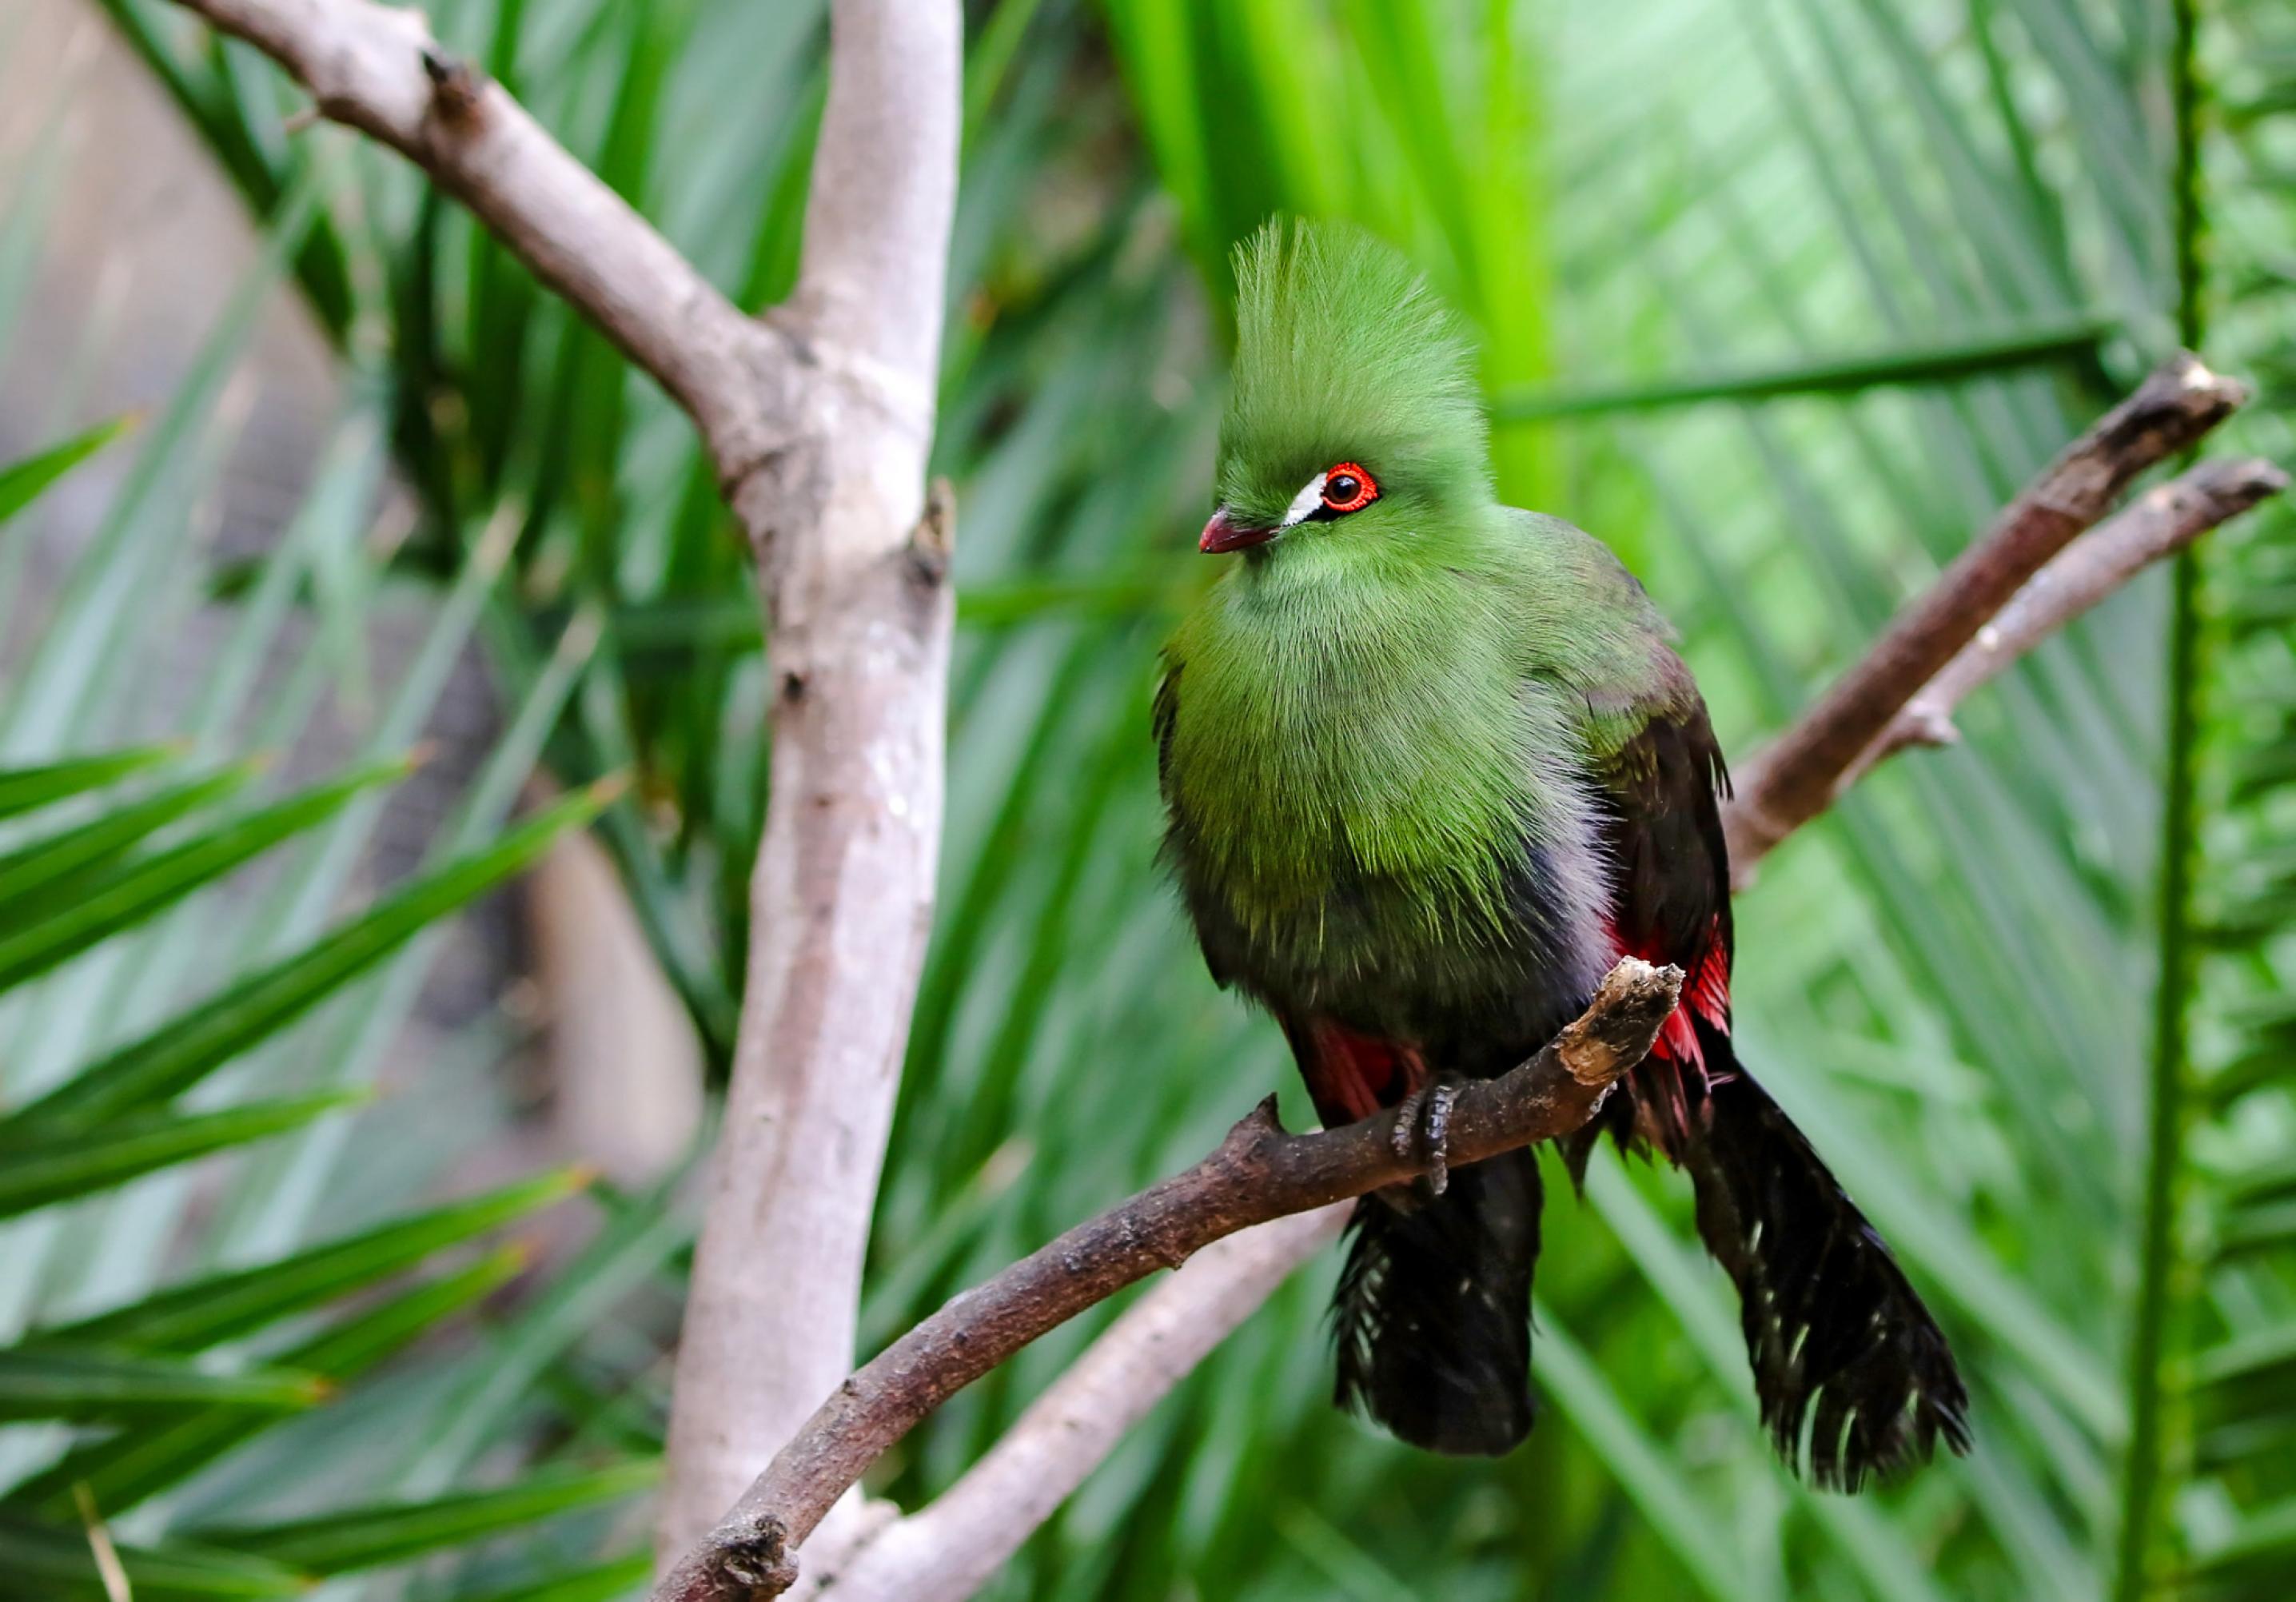 Ein Vogel mit grüner Brust und hoher grüner Haube, einem leuchtend roten Rand um die Augen und einem weißen Tränenfleck, mit schwarzen Flügeln und Schwanzfedern, sitzt auf einem Ast.